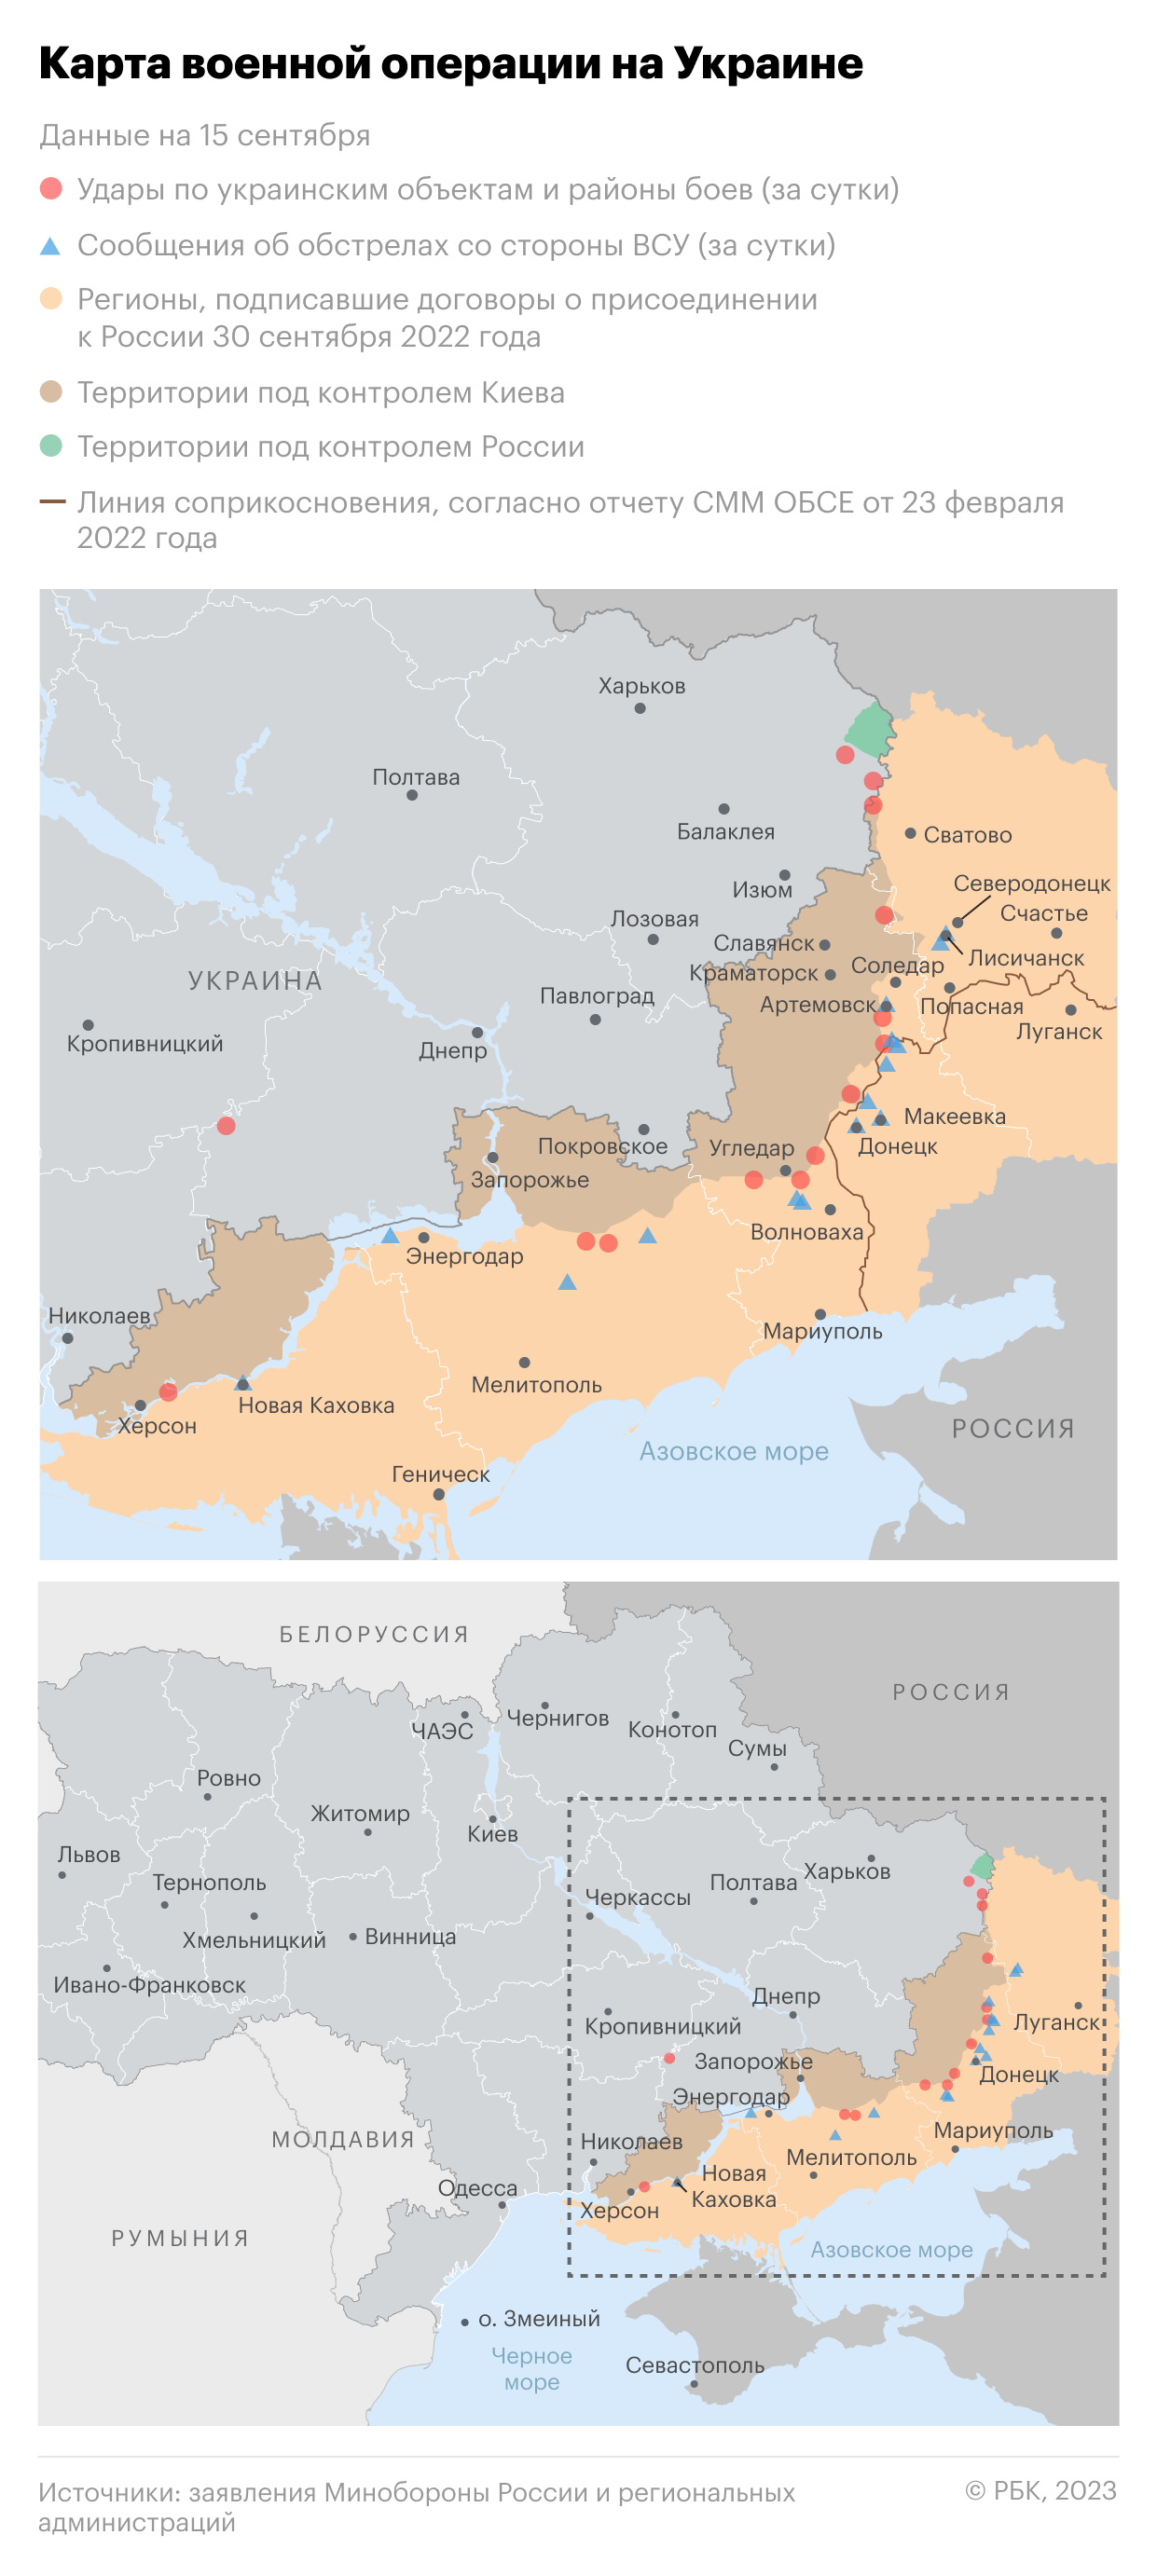 Военная операция на Украине. Карта на 15 сентября